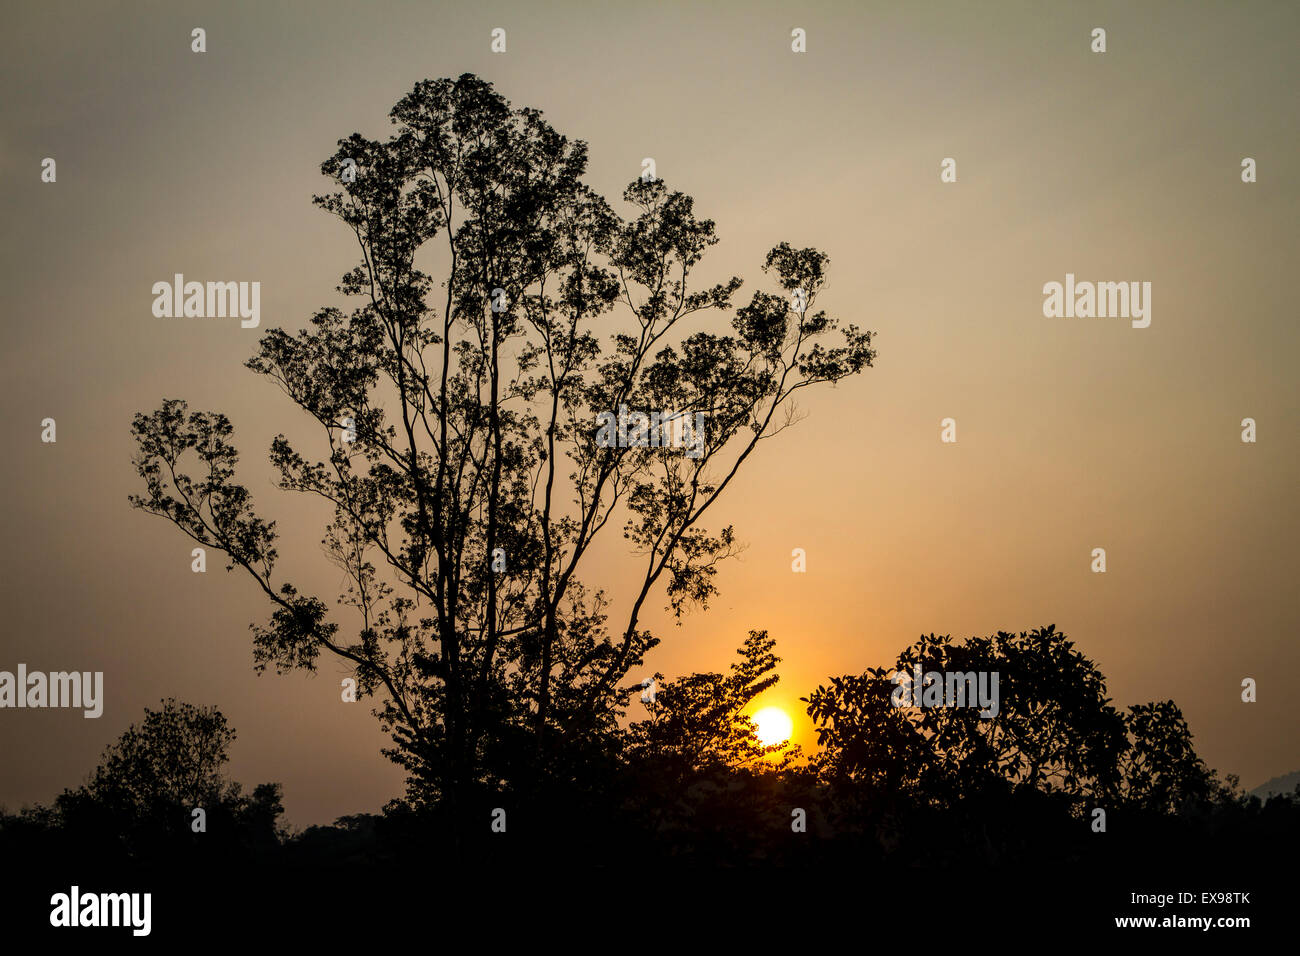 Lever de soleil derrière les silhouettes d'arbres avec un grand arbre sur le côté gauche contre un ciel orange Banque D'Images